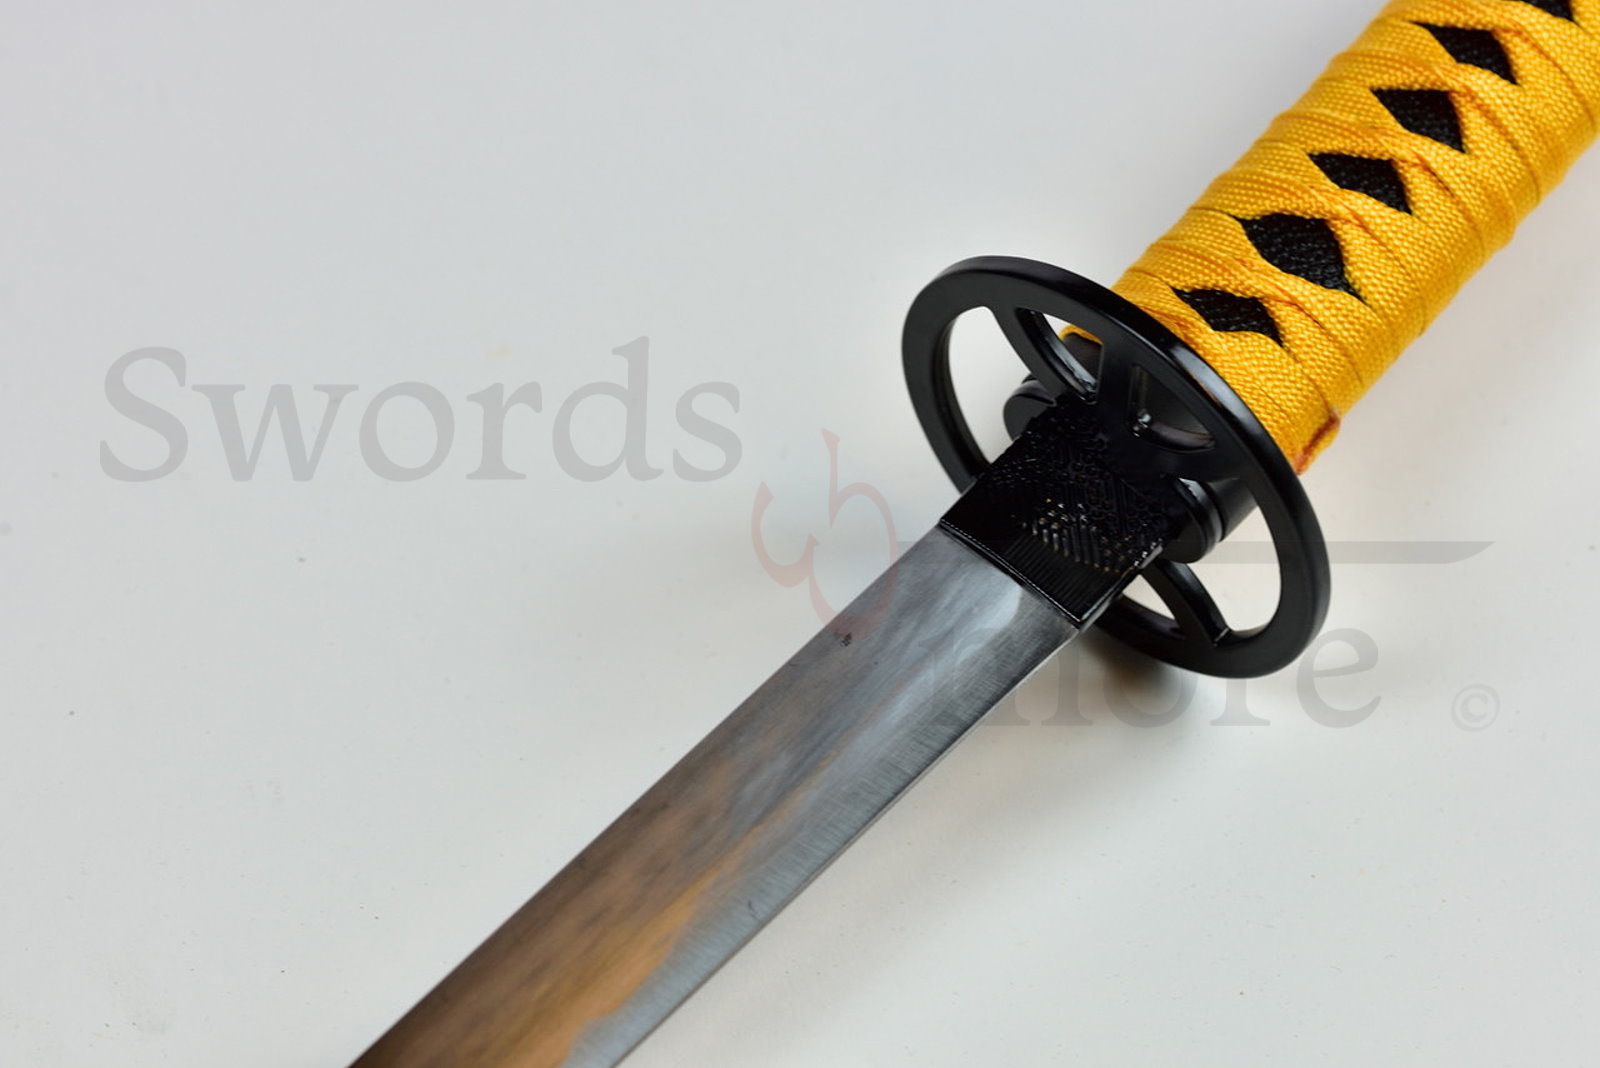 Tsukiuta - Uduki Arata 's Sword, handforged